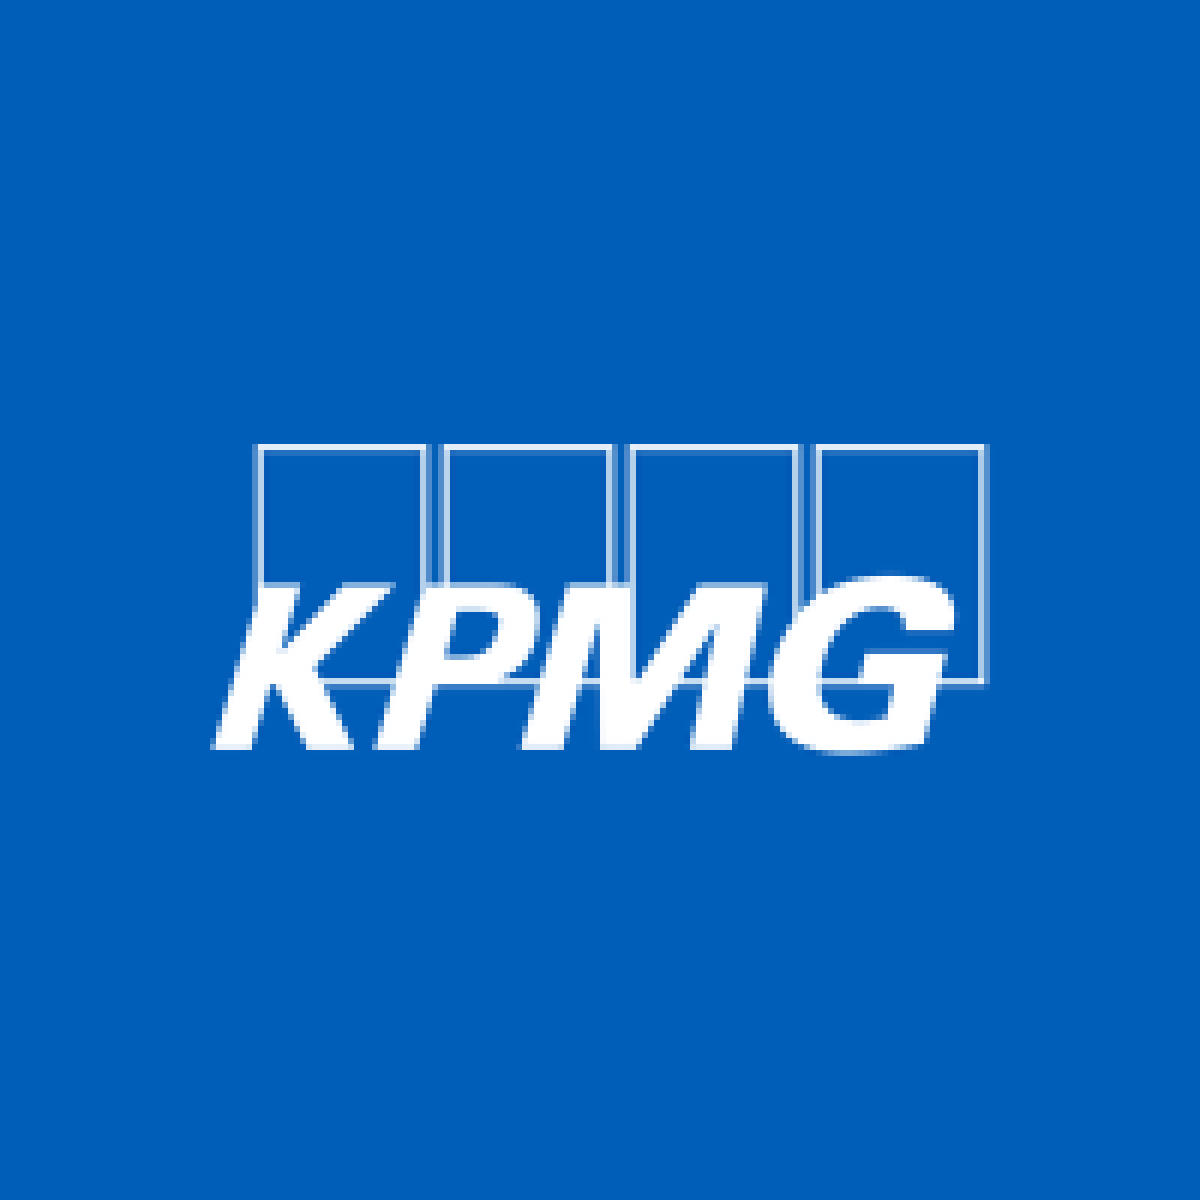 KPMG France